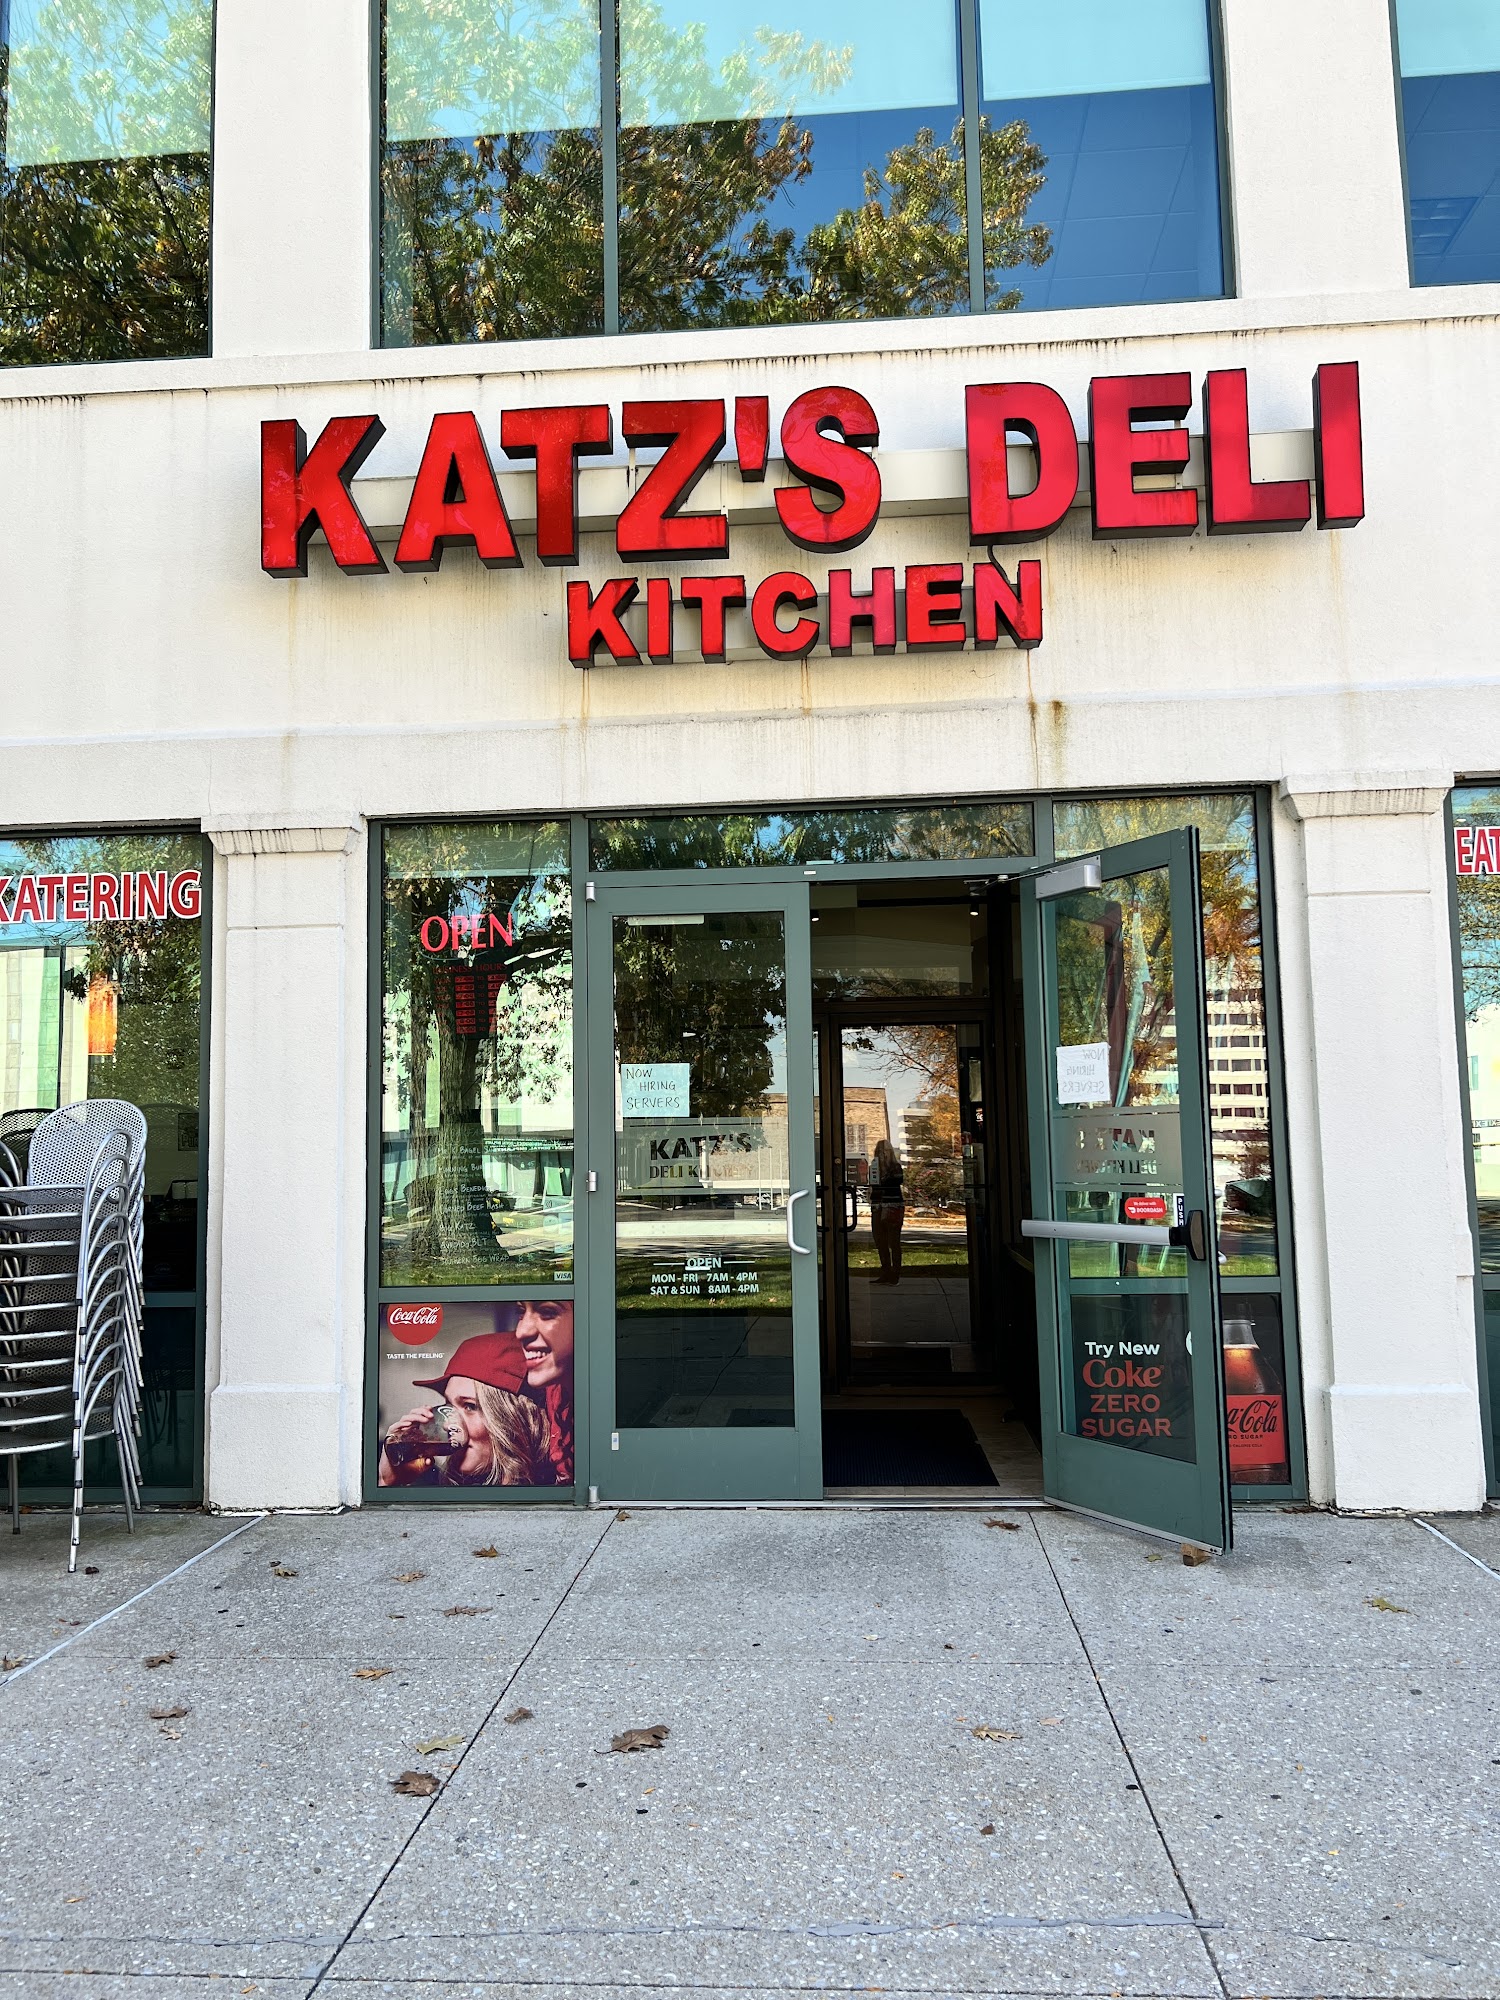 Katz's Deli Kitchen